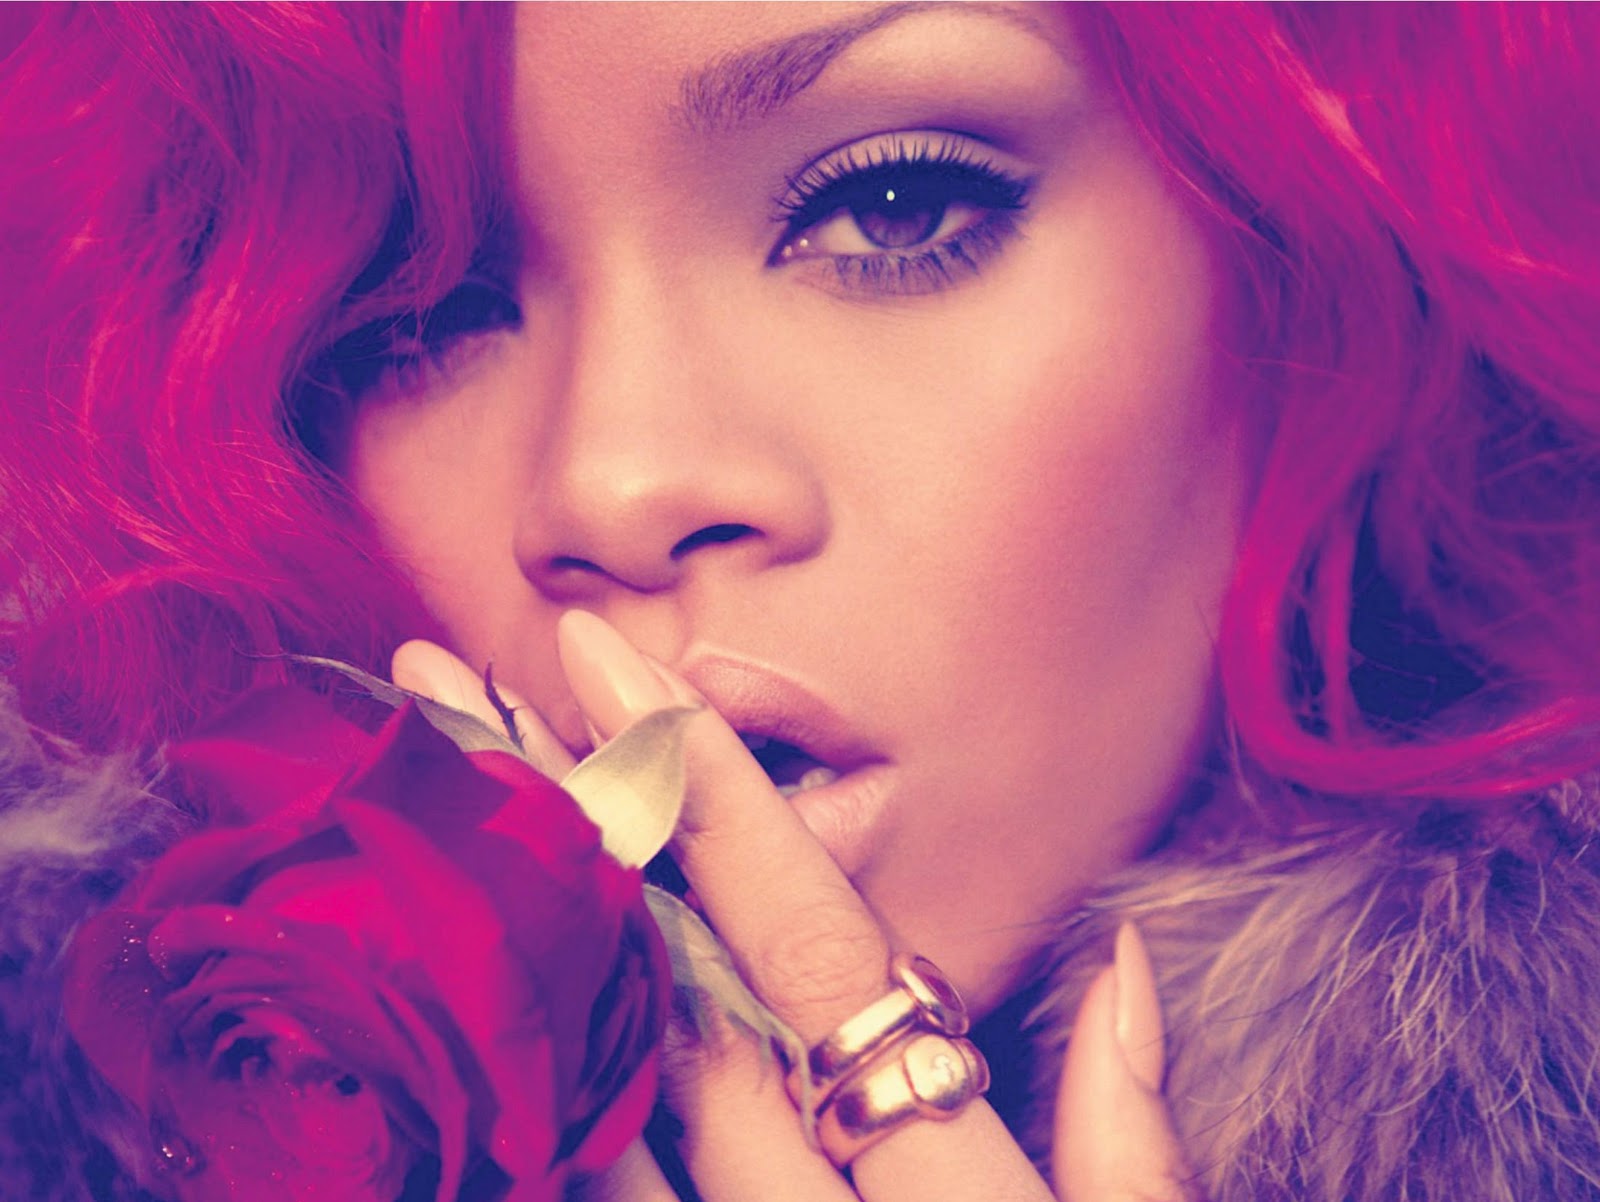 http://2.bp.blogspot.com/_PGj89ytP1AM/TUrERJDLuPI/AAAAAAAAAqM/hu_7vbp-qas/s1600/Rihanna-Loud-Album-Booklet%255B1%255D.jpg